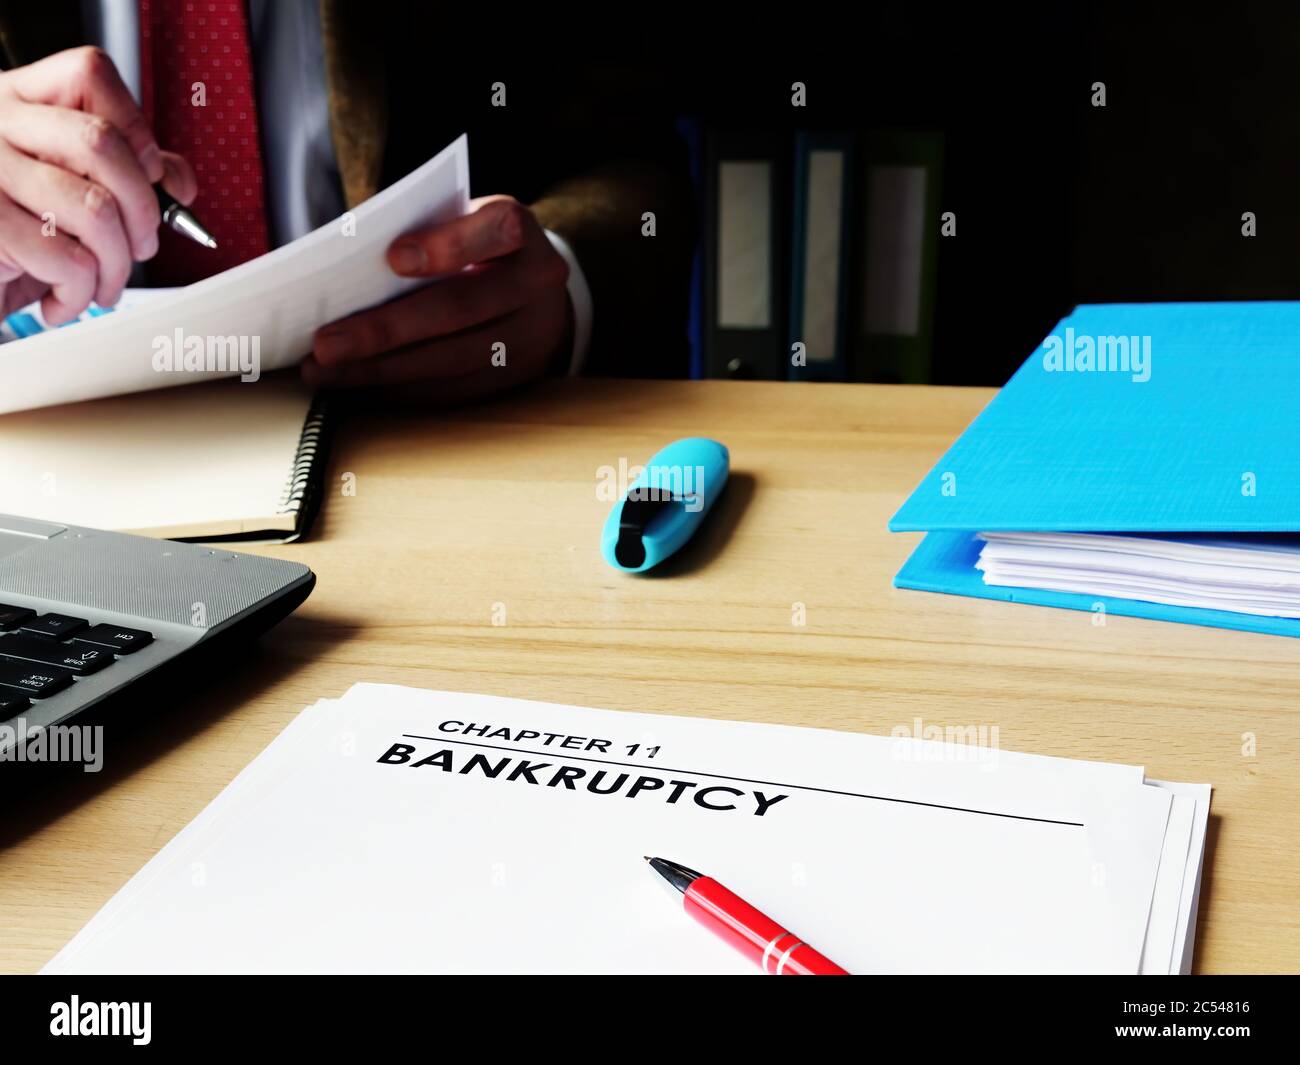 Capítulo 11 papeles de bancarrota en el escritorio del gerente. Foto de stock